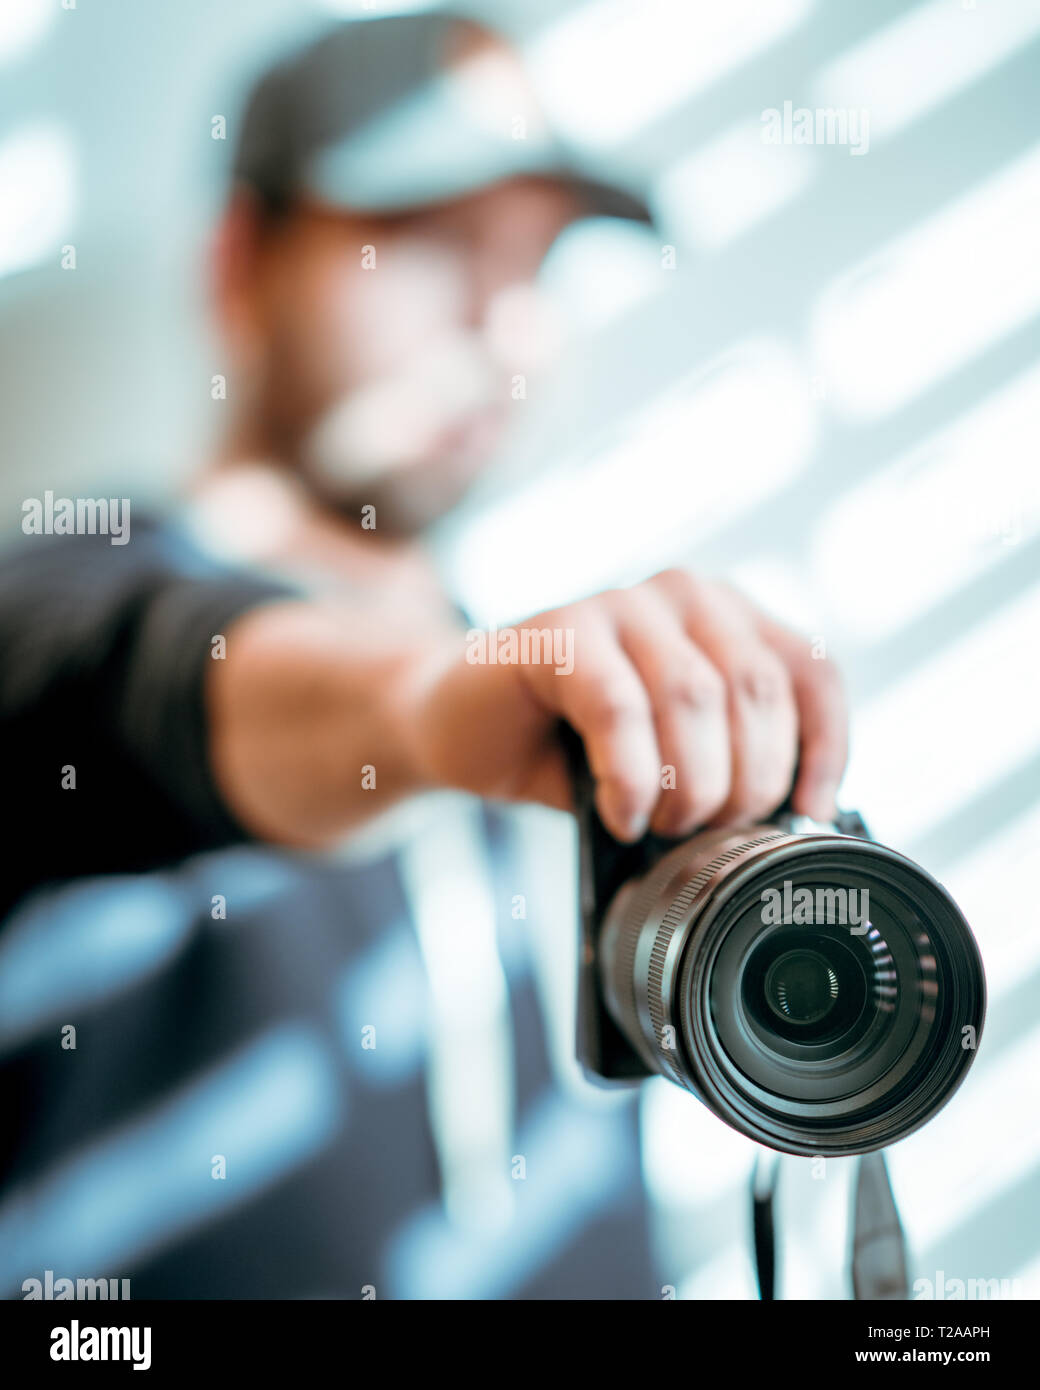 Hombre manos sosteniendo la cámara fotográfica en Shady fondo blanco, espacio de copia Foto de stock